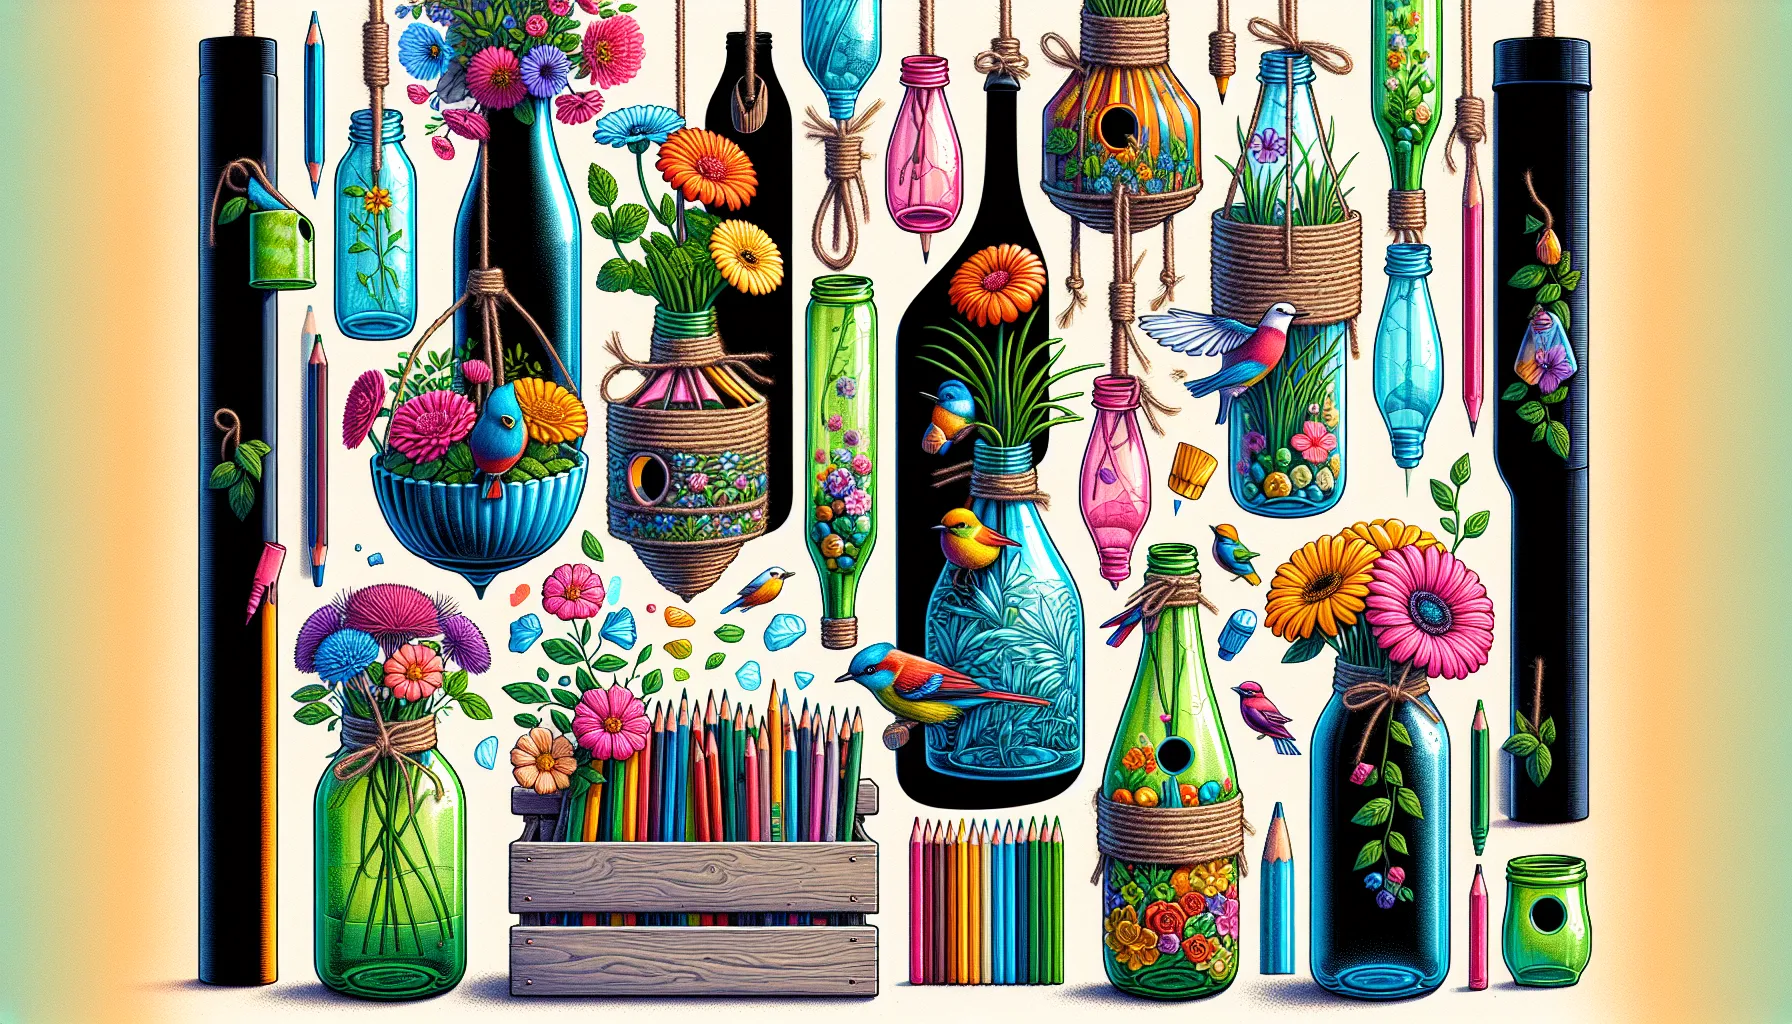 As garrafas PET podem ser reutilizadas de várias maneiras criativas. Aqui estão algumas ideias:

1. Vasos de plantas: Corte a parte superior das garrafas e use-as como vasos para suas plantas. Você pode até decorá-las pintando ou adicionando adesivos coloridos.

2. Organizadores de materiais: Corte as garrafas ao meio e use as partes inferiores como organizadores para materia